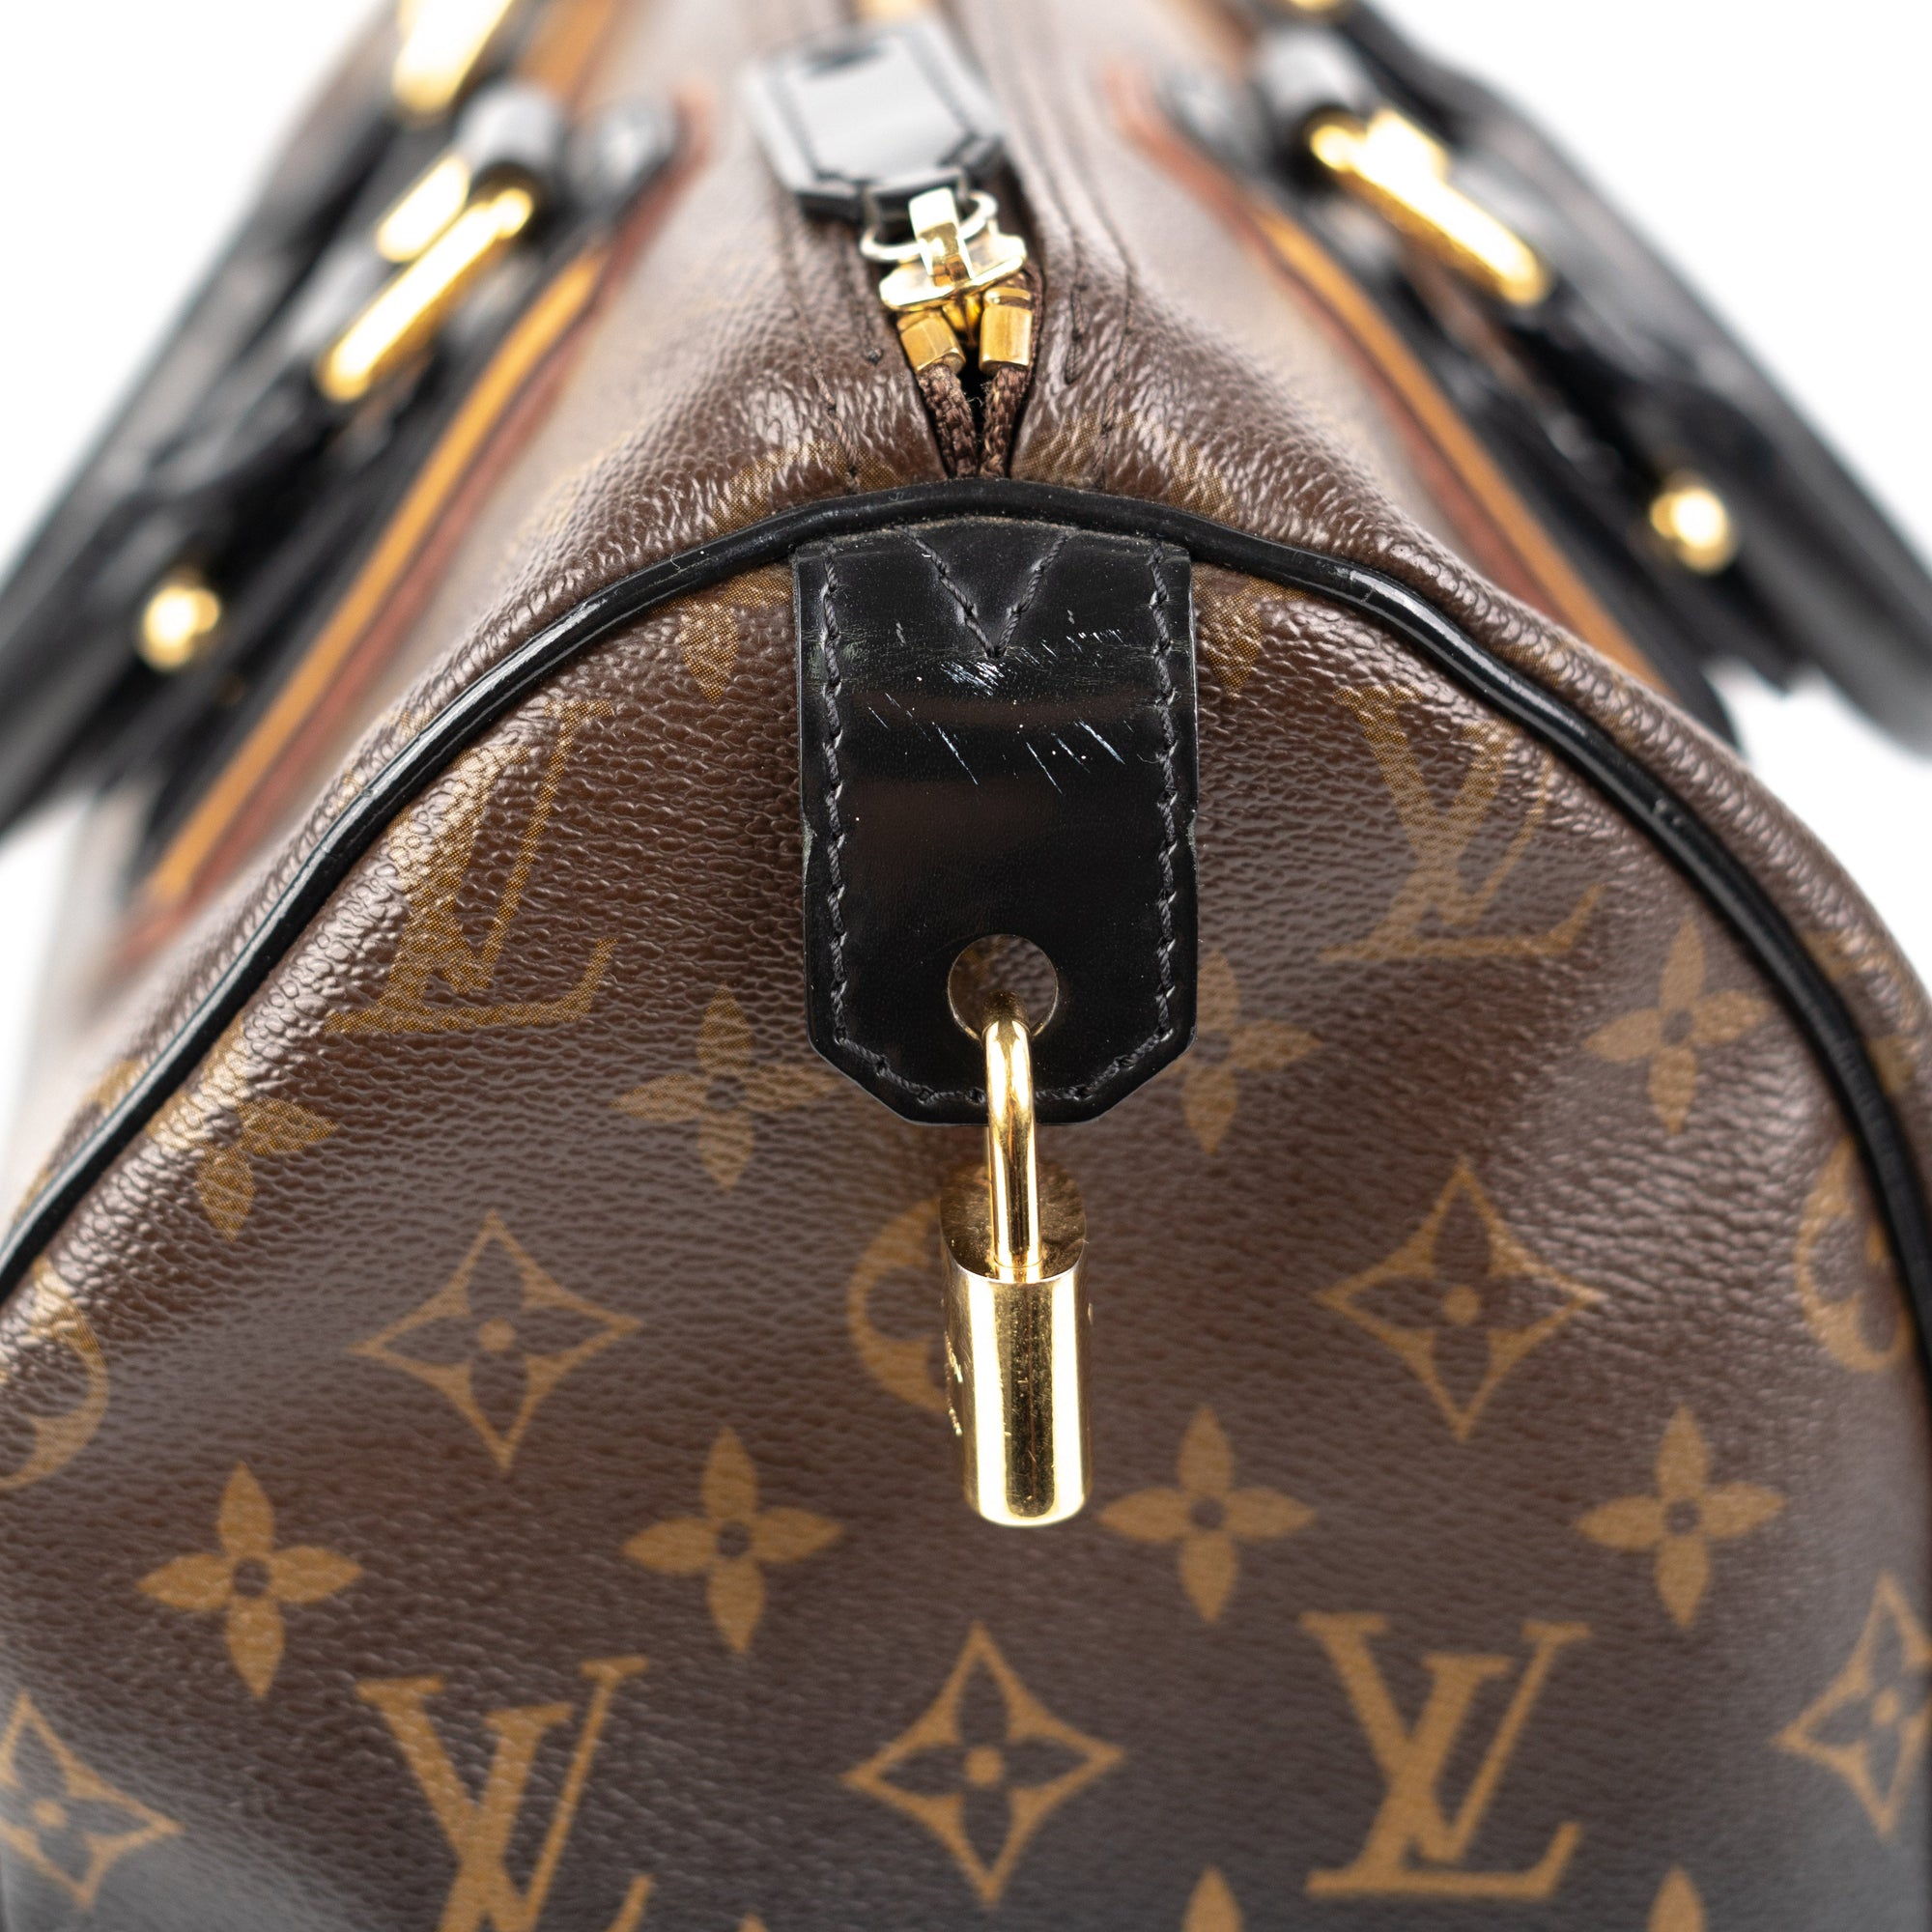 Louis Vuitton Limited Edition Noir Monogram Mirage Speedy 30 Bag